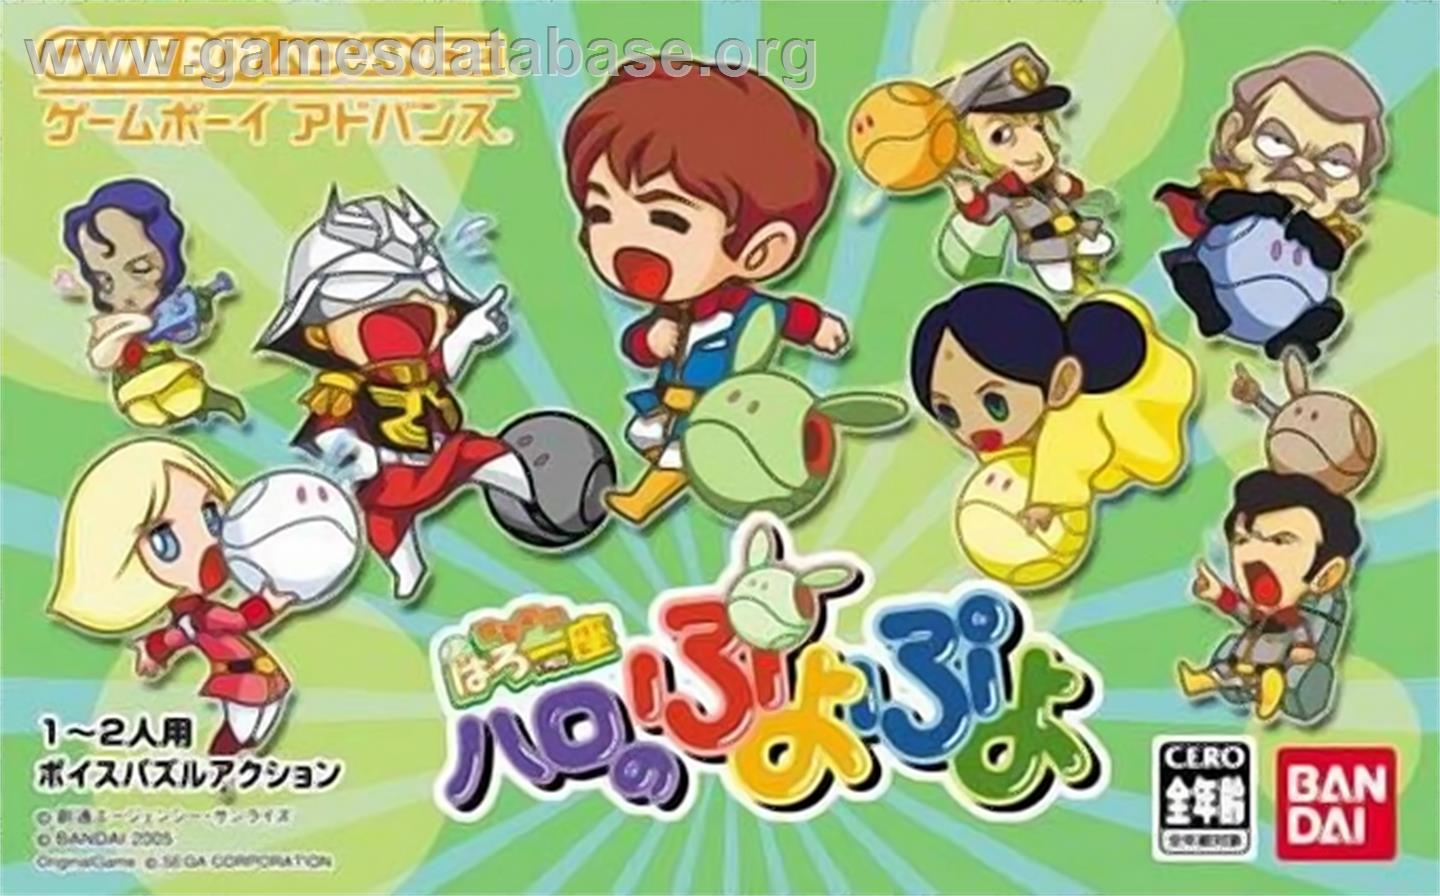 Kidou Gekidan Haro Ichiza: Haro no Puyo Puyo - Nintendo Game Boy Advance - Artwork - Box